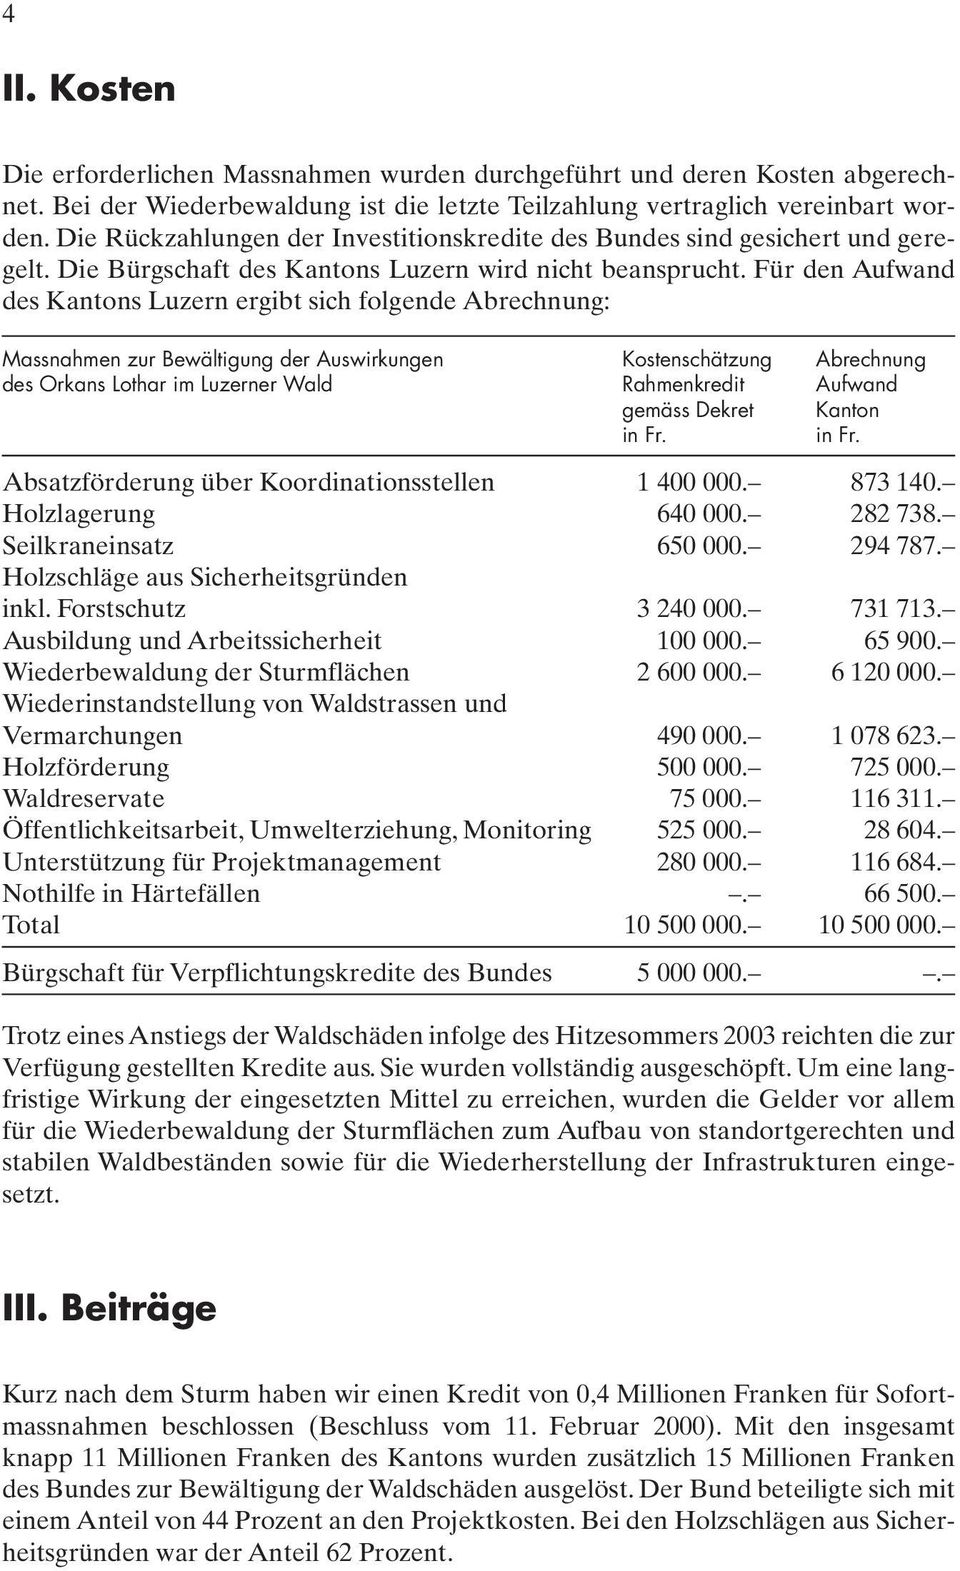 Für den Aufwand des Kantons Luzern ergibt sich folgende Abrechnung: Massnahmen zur Bewältigung der Auswirkungen Kostenschätzung Abrechnung des Orkans Lothar im Luzerner Wald Rahmenkredit Aufwand